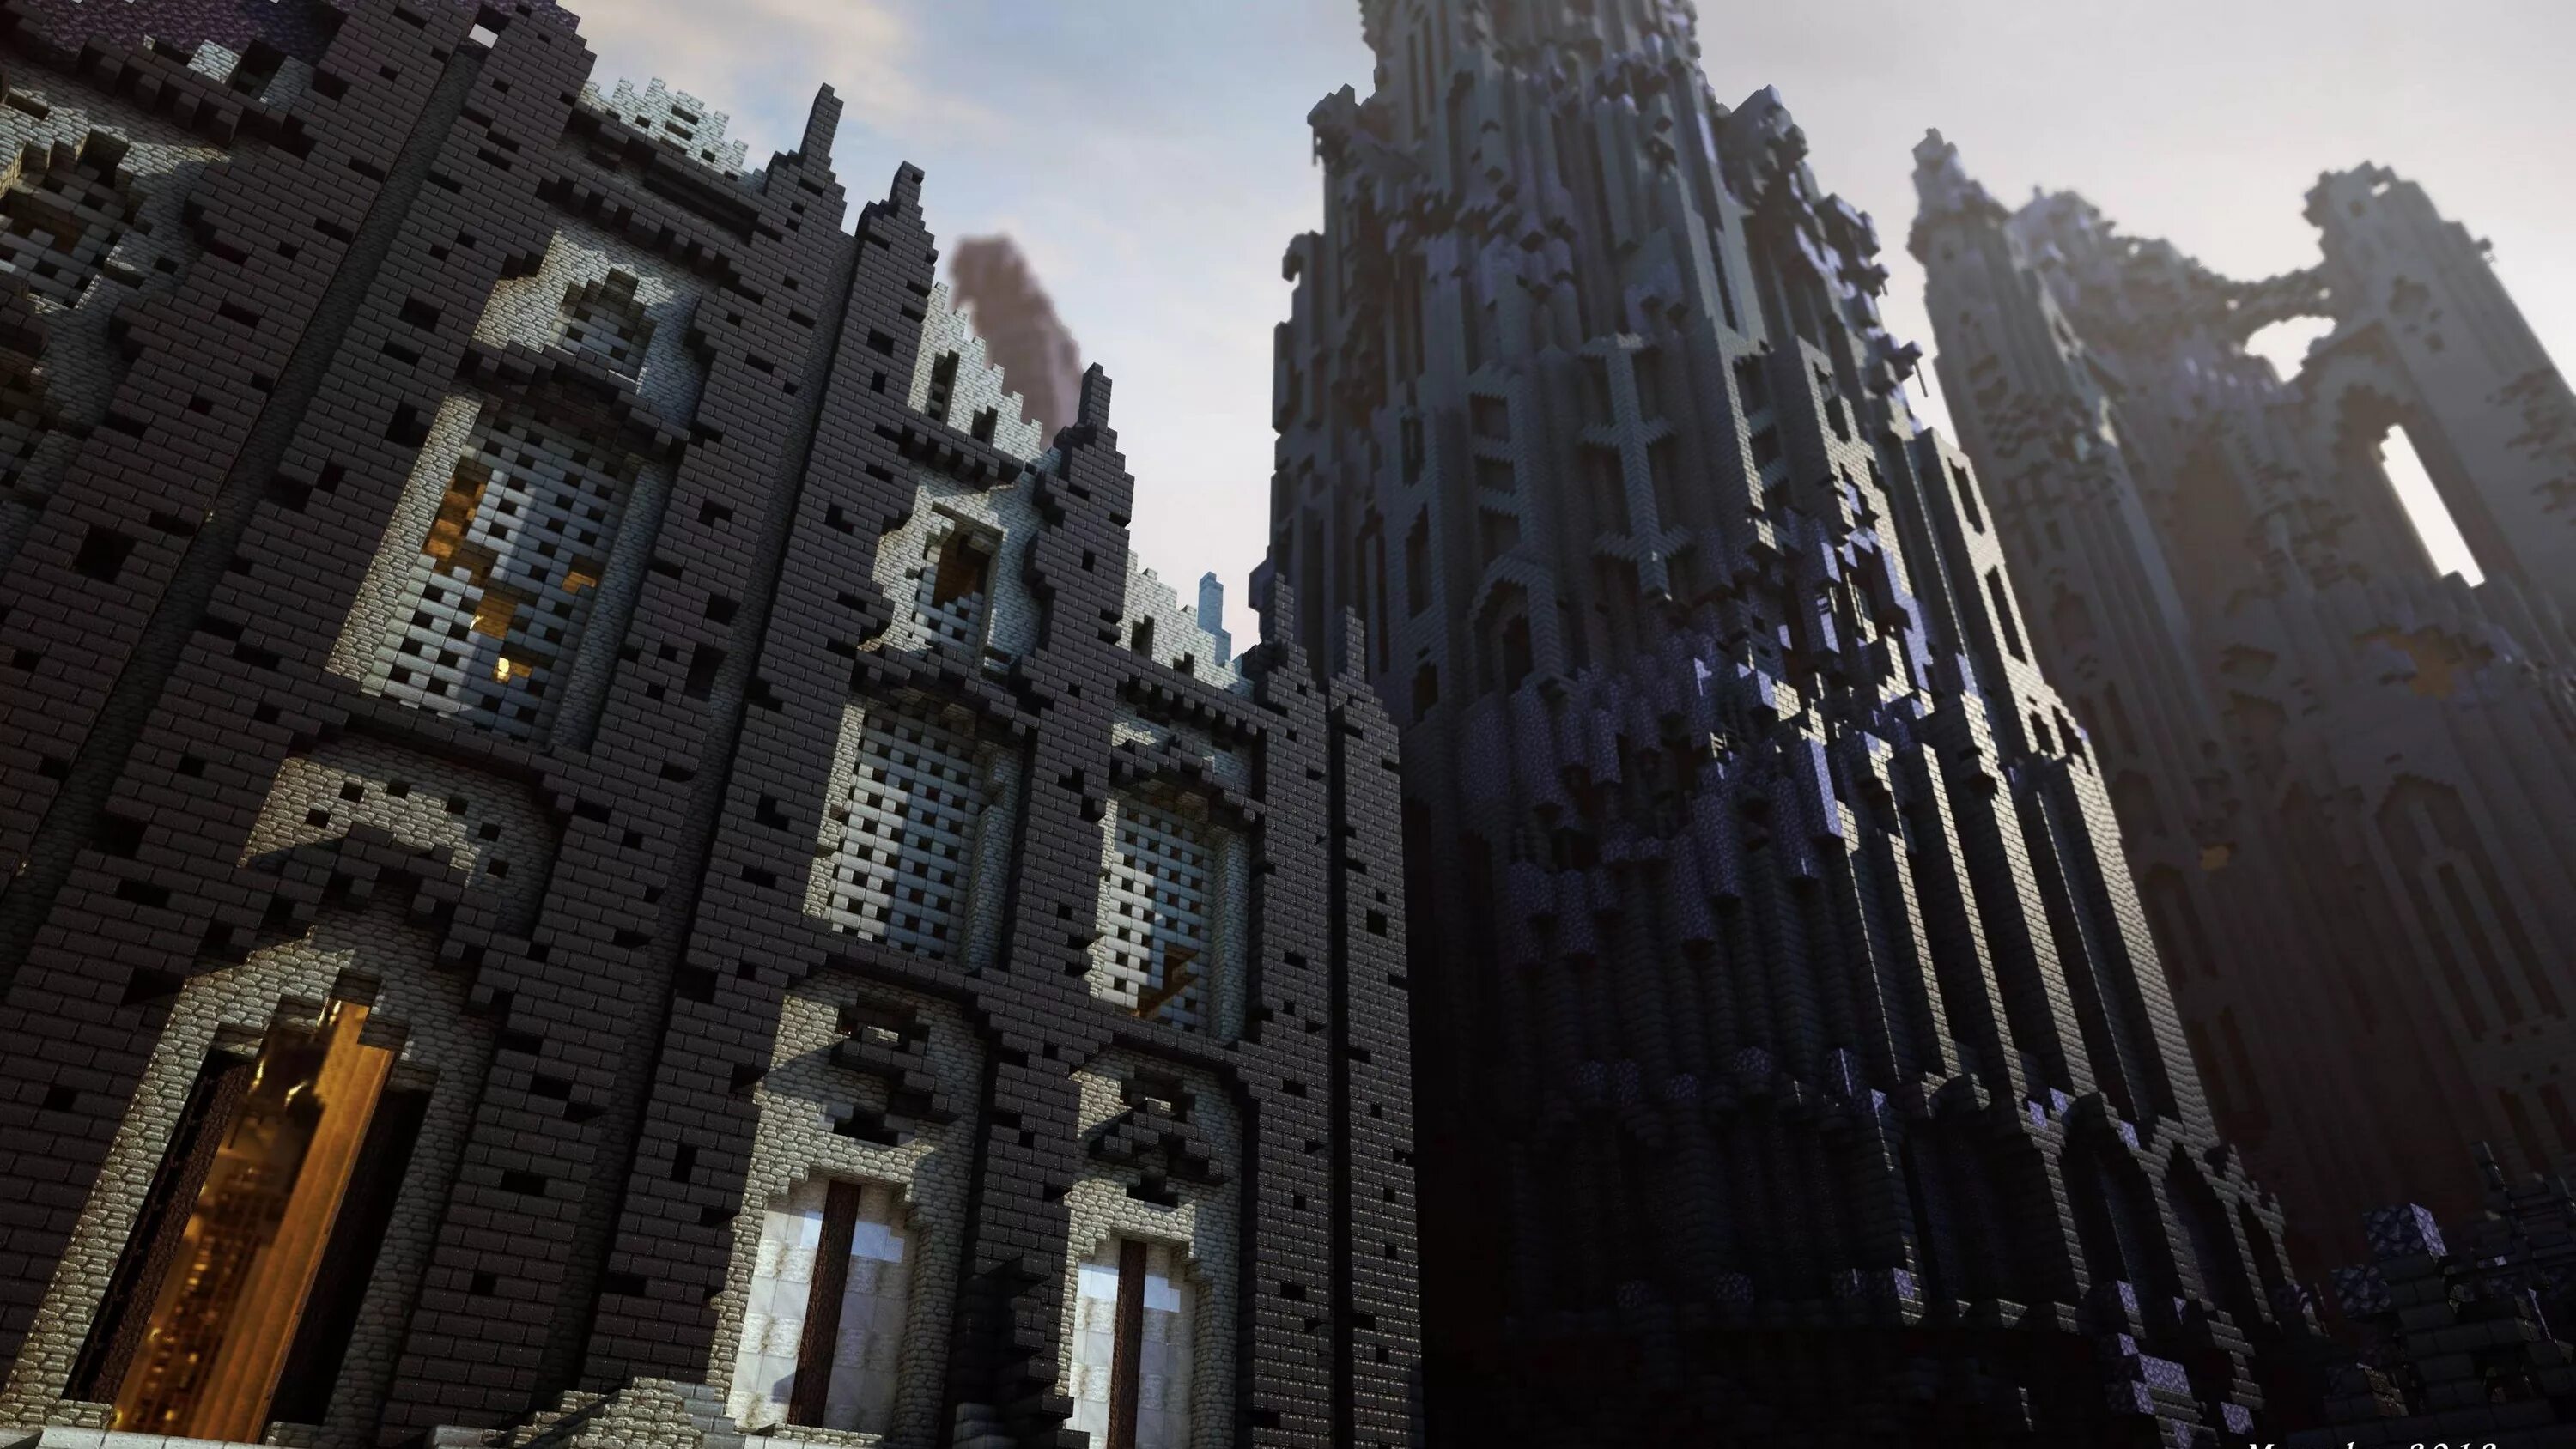 The knocker minecraft. Minecraft. Красивые постройки. Красивые здания из игр. Красивые постройки из игр.